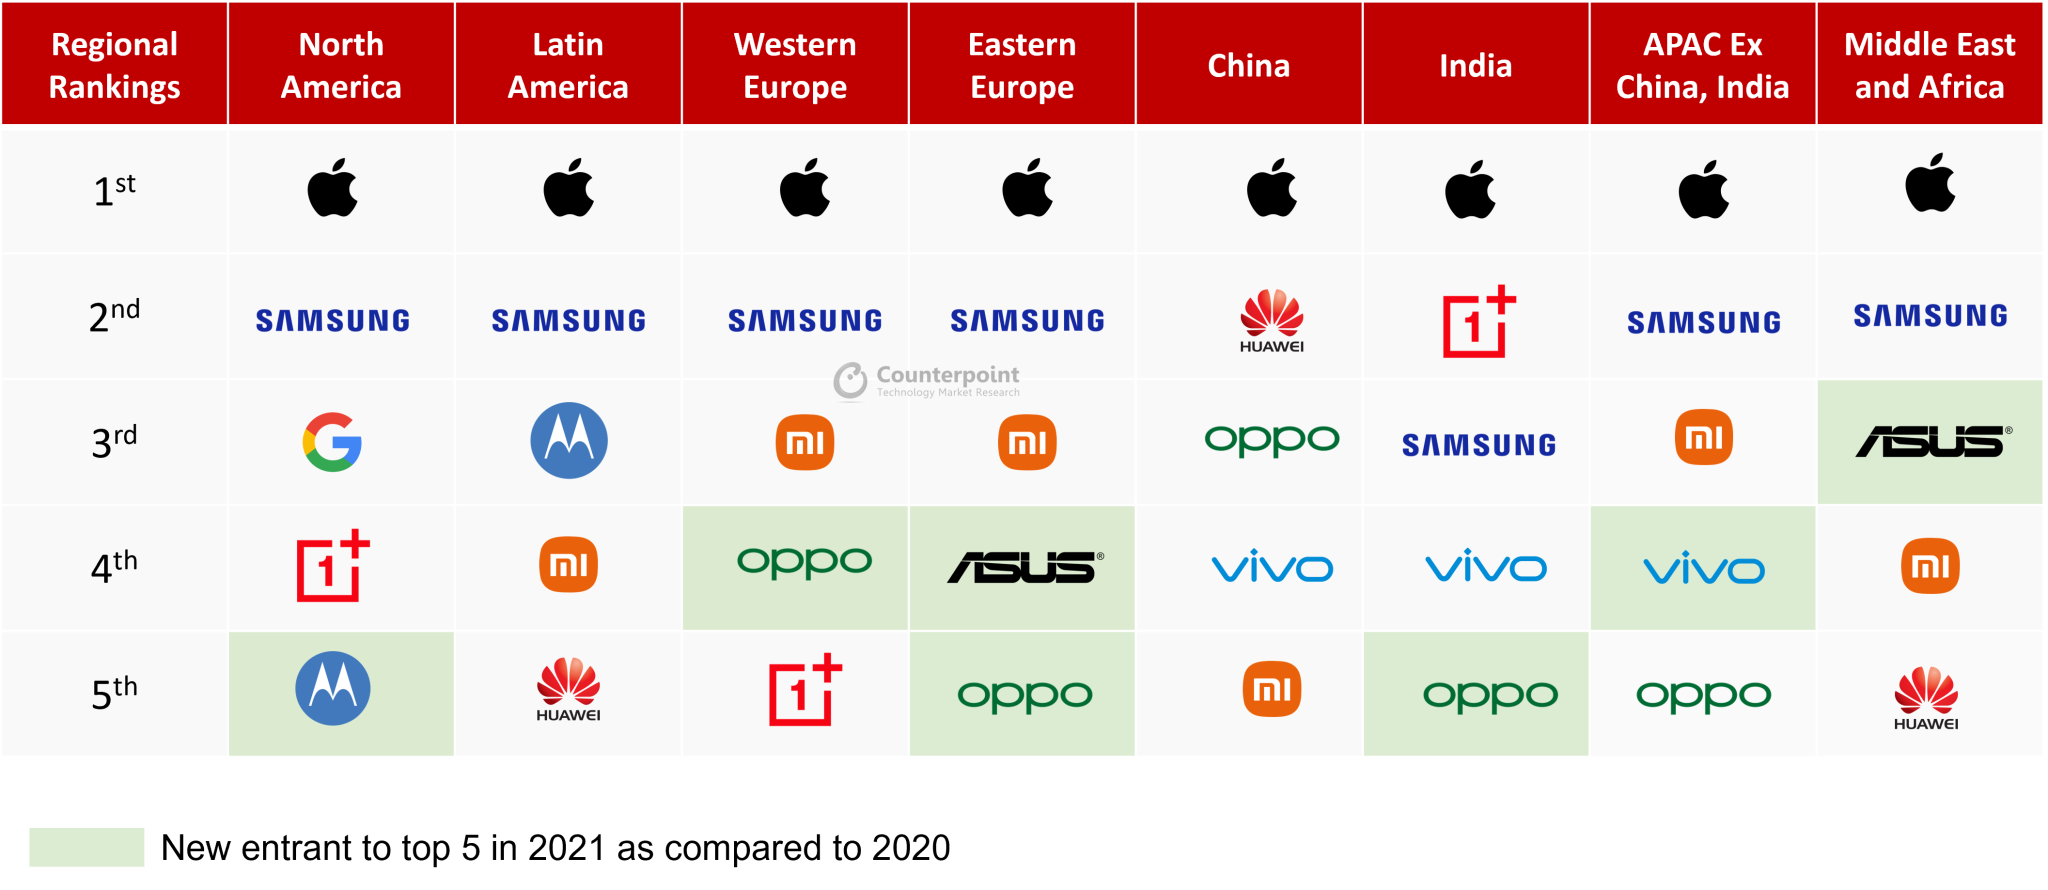 Doanh số bán hàng của Samsung tăng trưởng tụt hậu so với thị trường cao cấp nói chung.